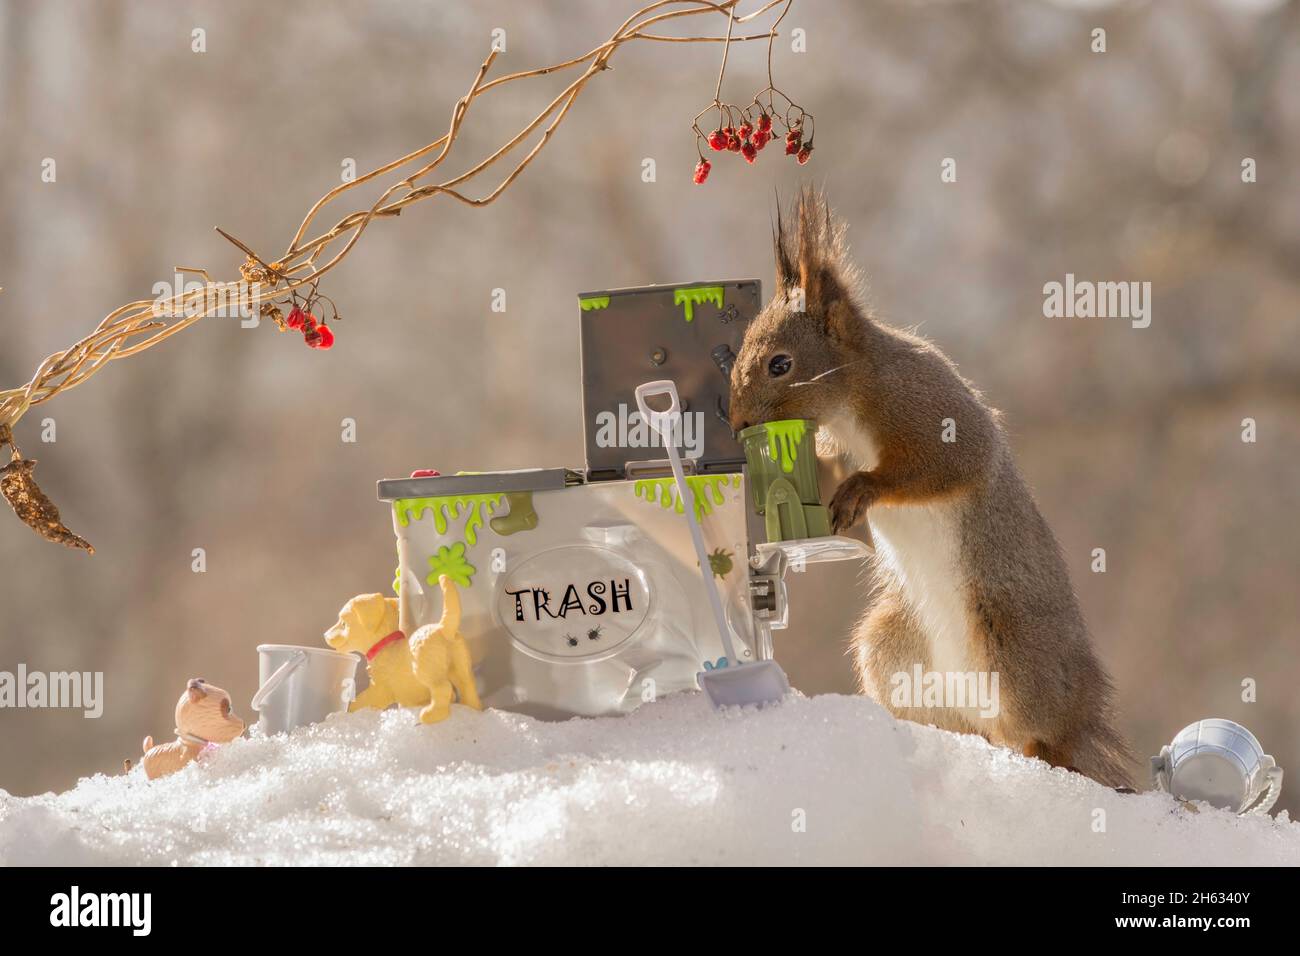 Profilo e close up di scoiattolo rosso in piedi mangiare fuori di un cestino Foto Stock